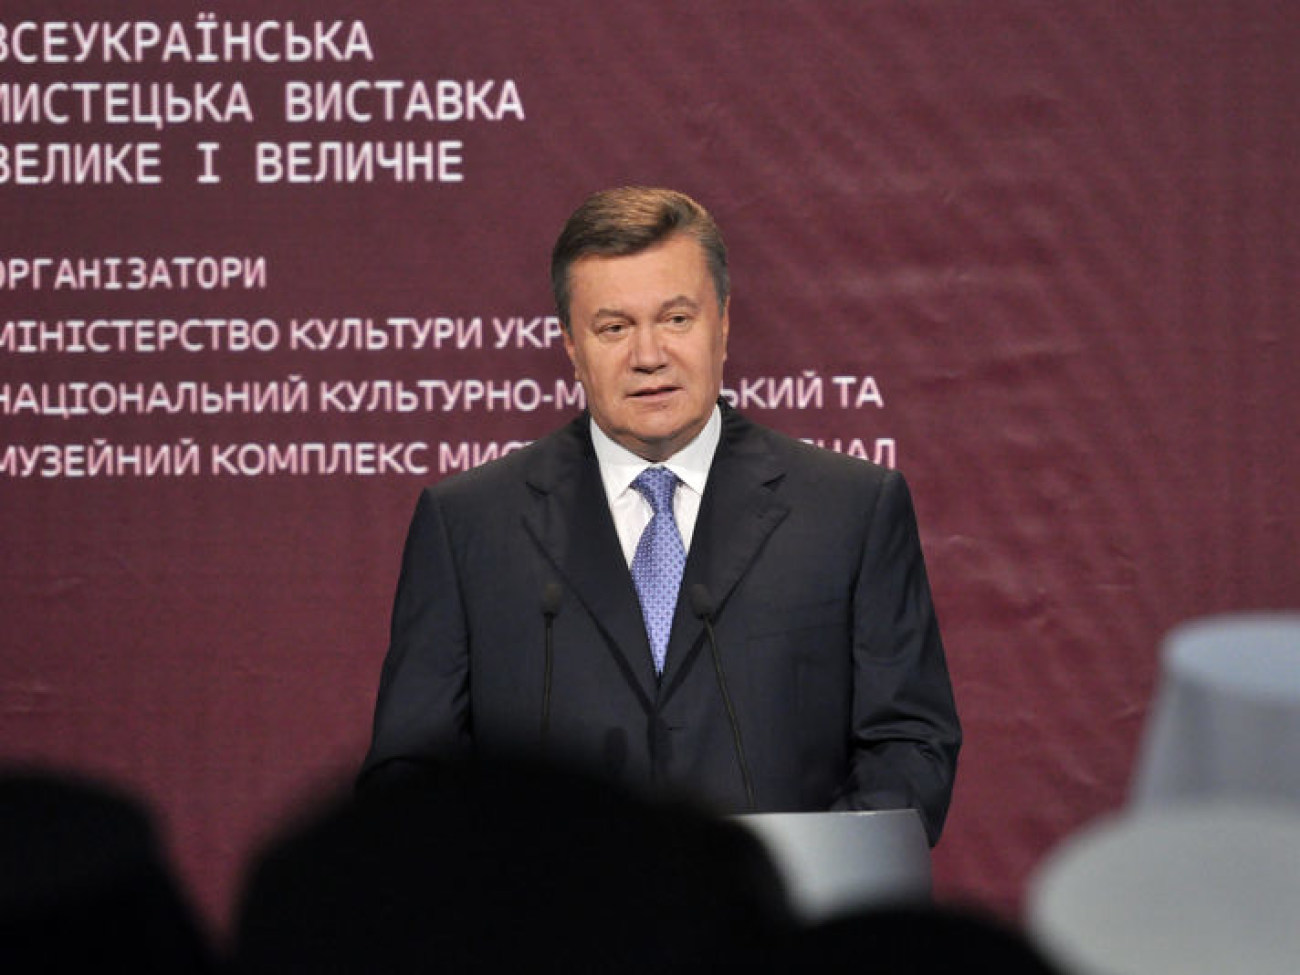 Президент Украины Виктор Янукович принял участие в мероприятиях по празднованию 1025-летия крещения Киевской Руси